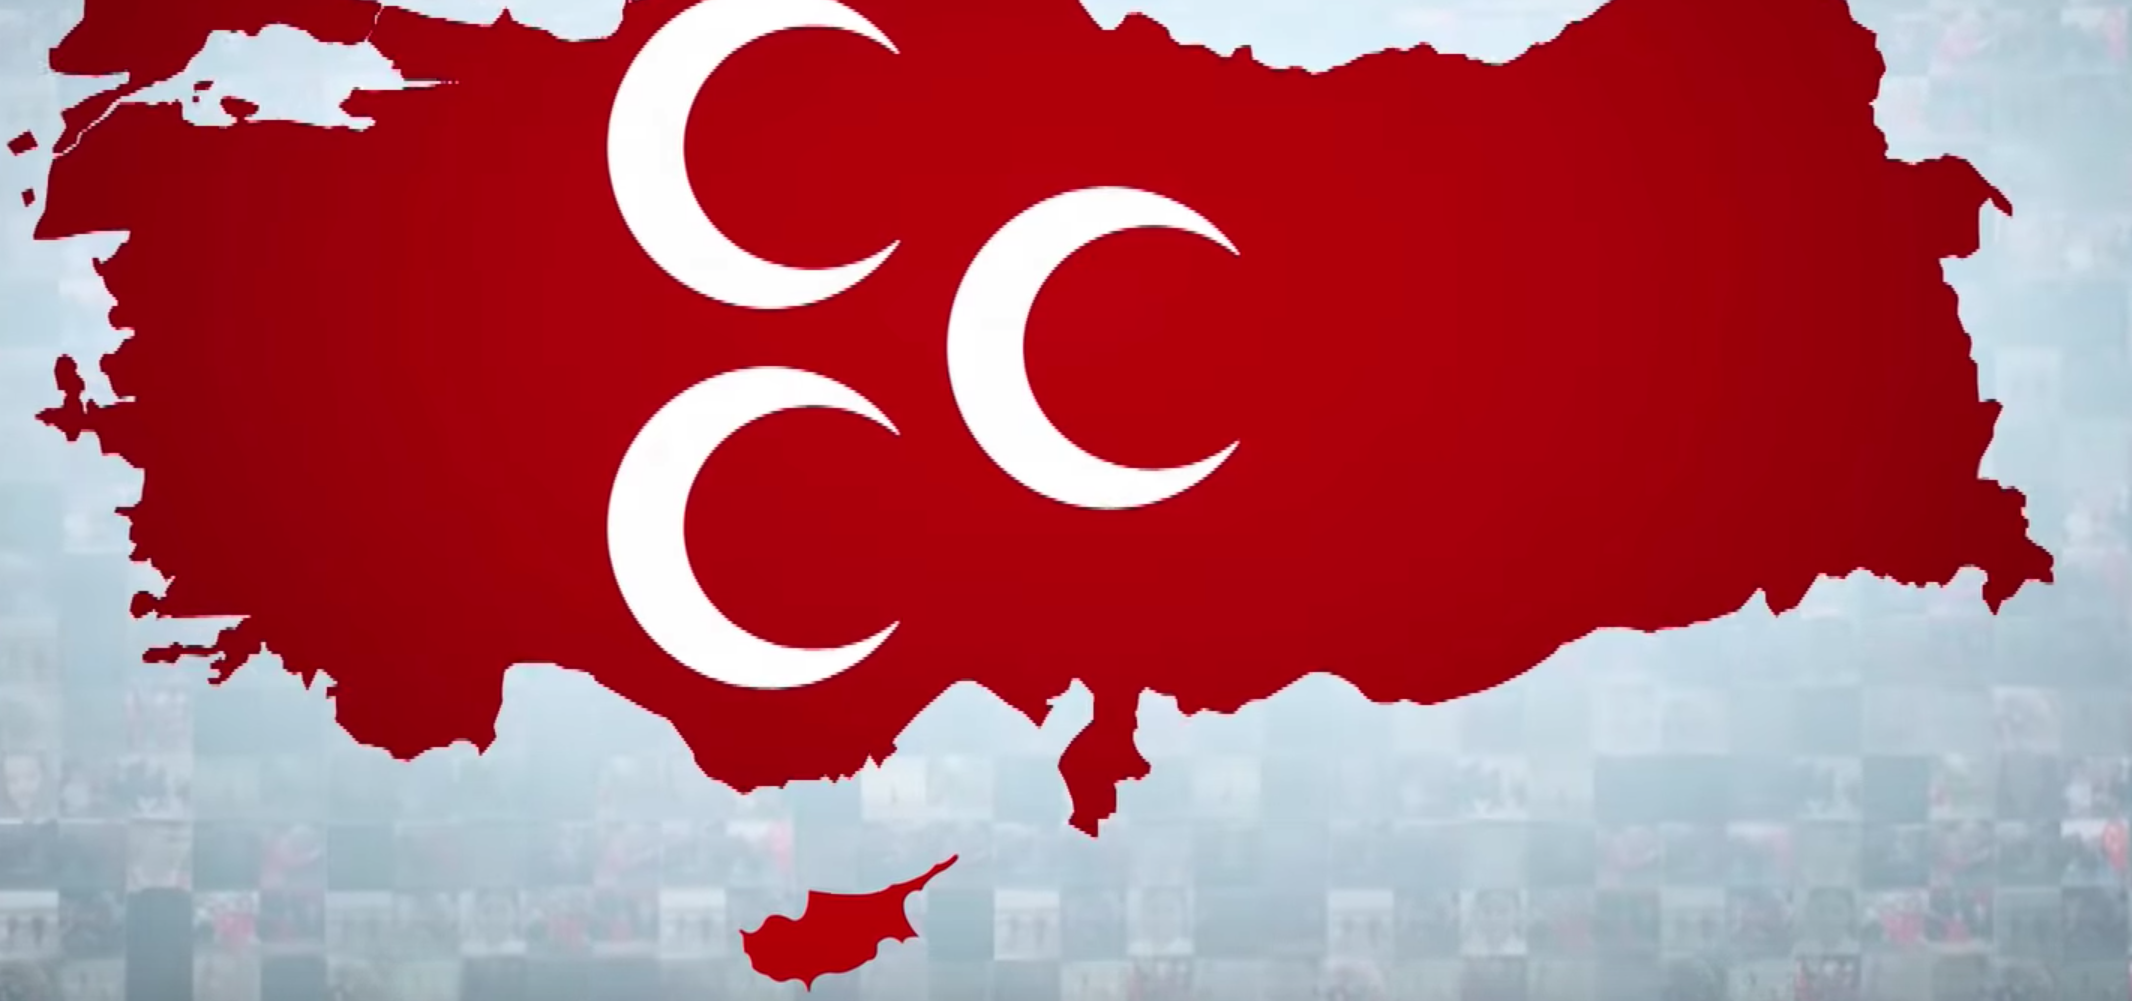 Τουρκία: Σύμμαχος του Ρ.Τ. Ερντογάν εμφανίζει σε προεκλογικό σποτ τουρκική ολόκληρη την Κύπρο! (φωτό, βίντεο)